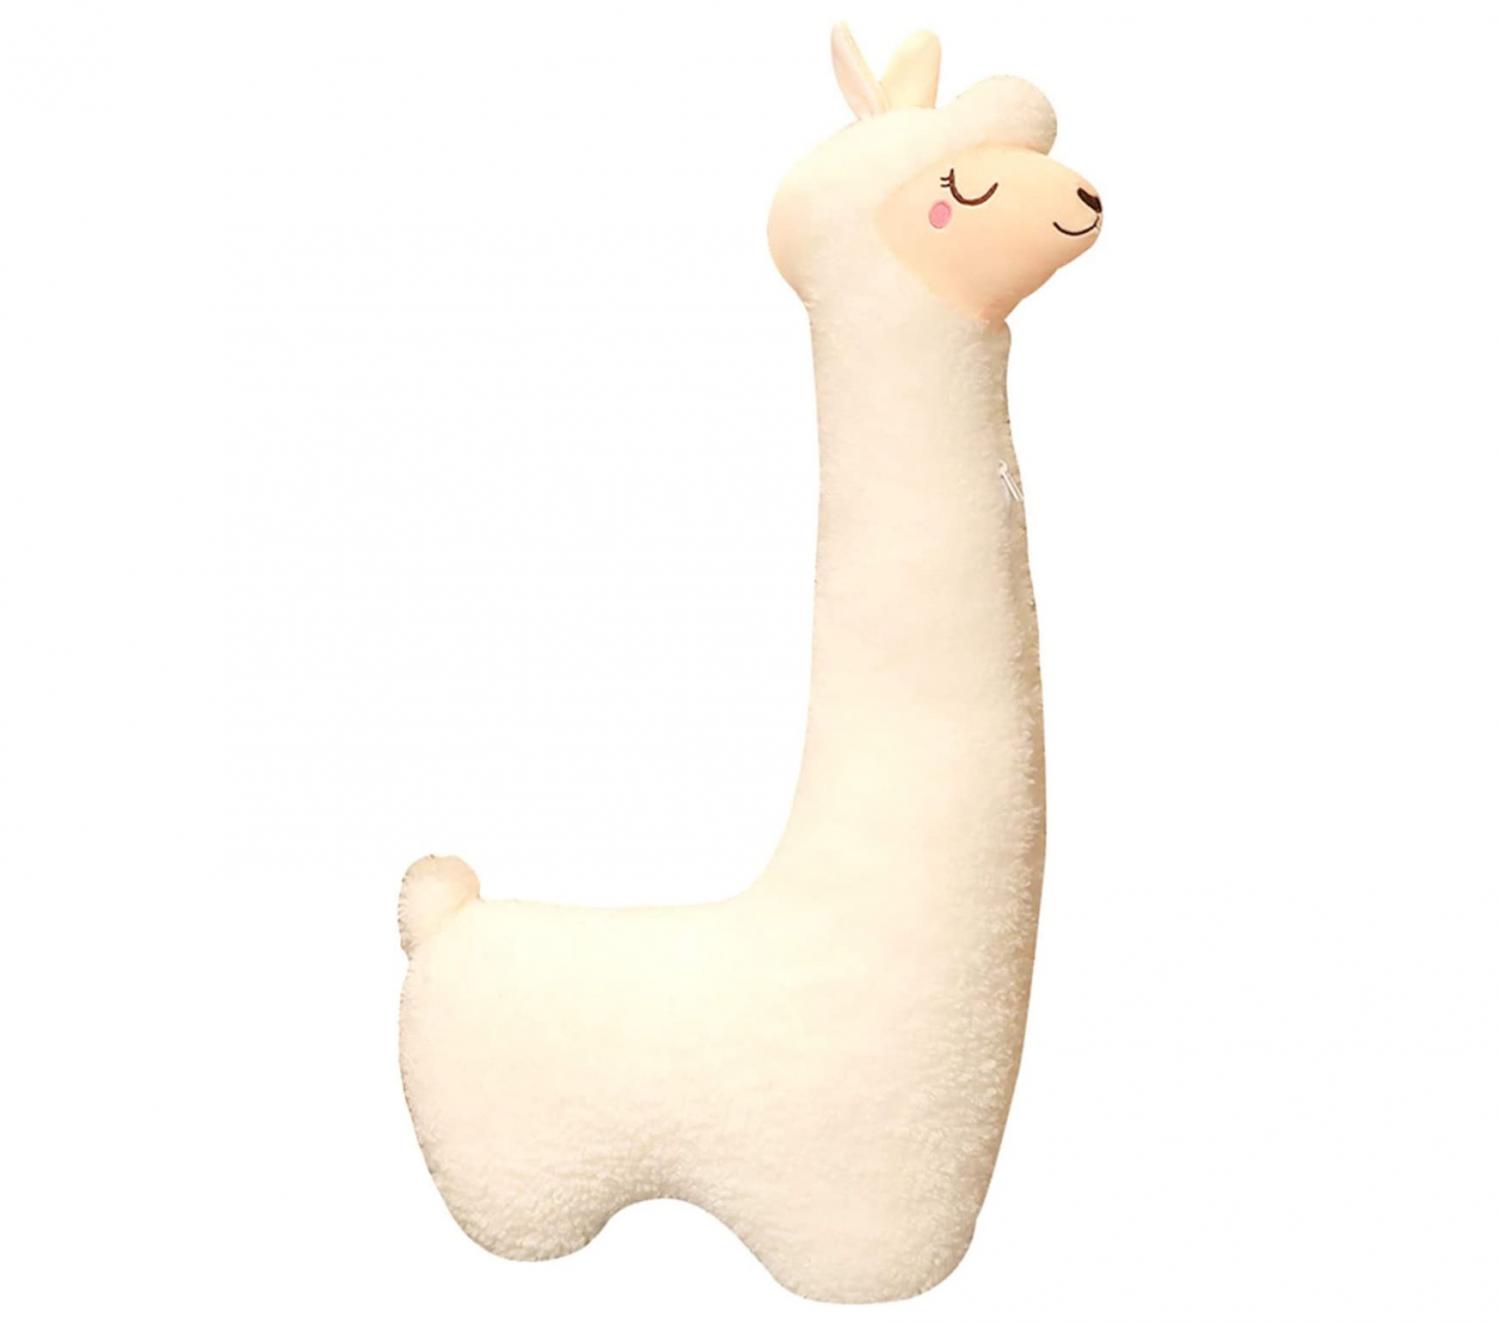 Llama body pillow - life-size alpaca body pillow